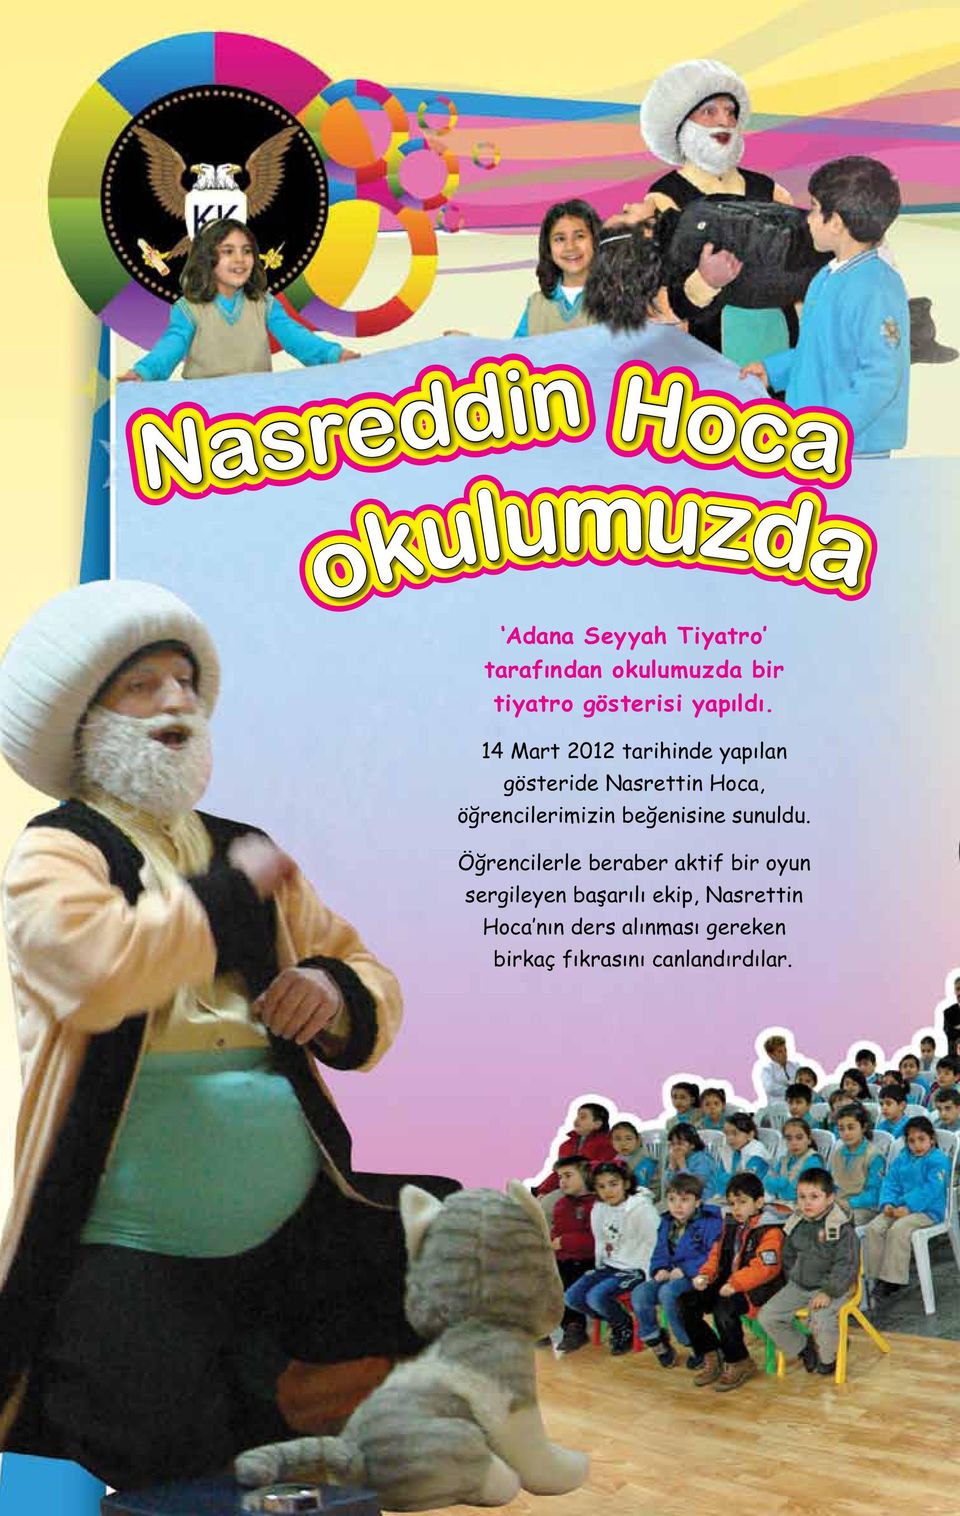 14 Mart 2012 tarihinde yapılan gösteride Nasrettin Hoca, öğrencilerimizin beğenisine sunuldu.